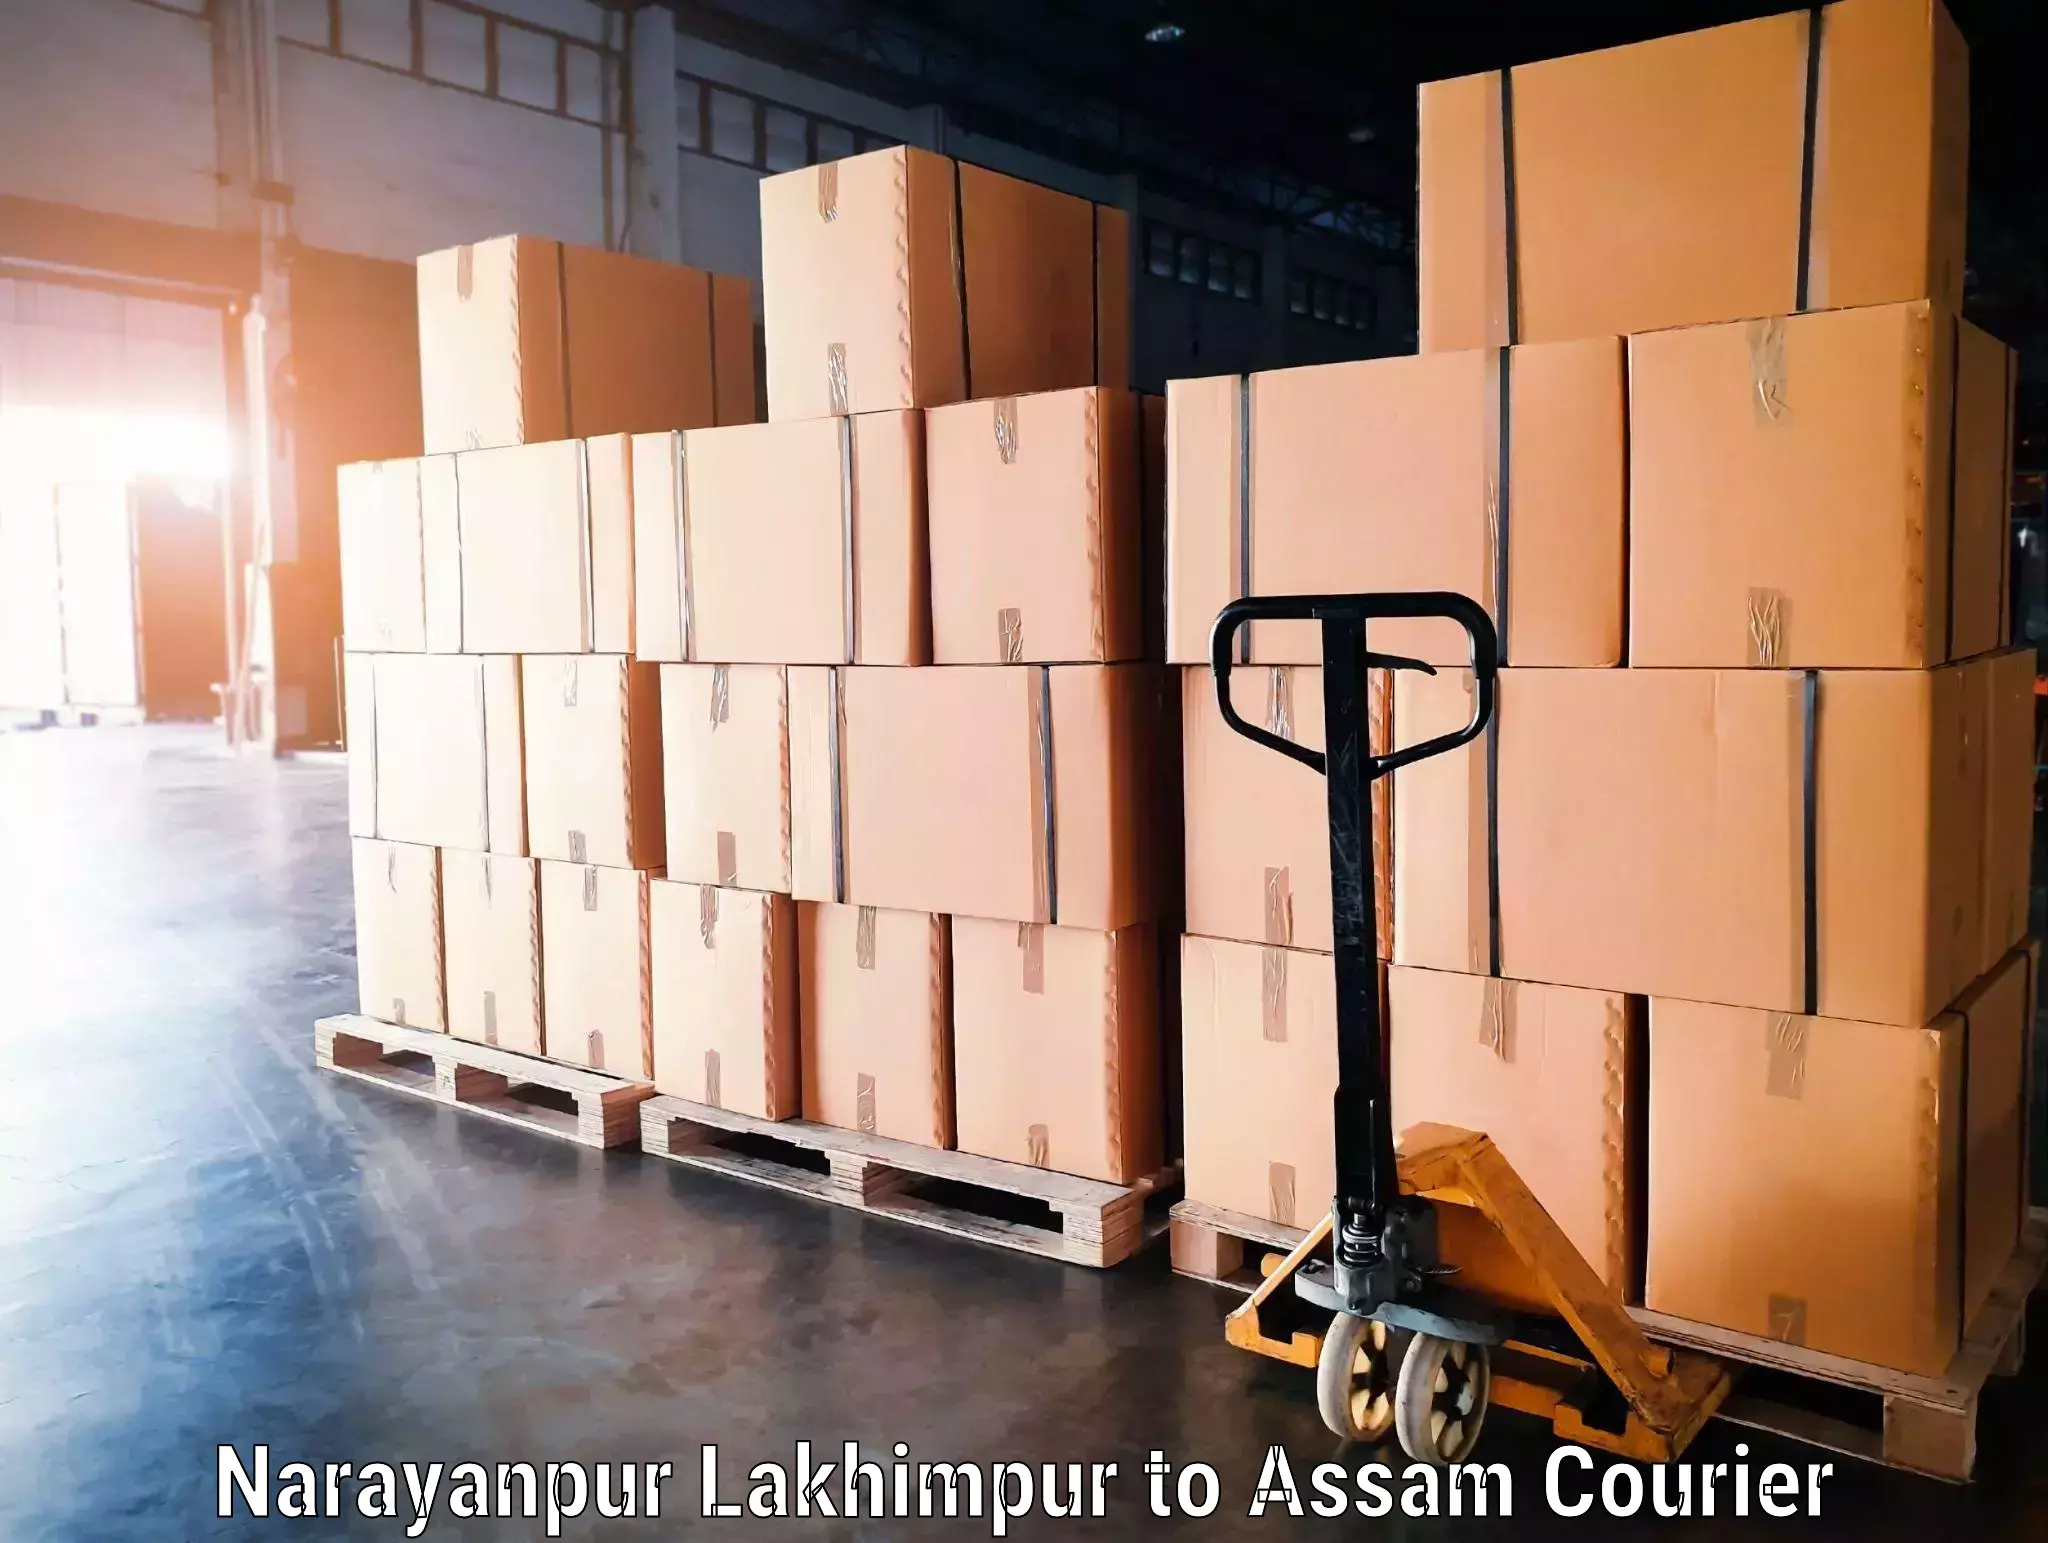 Baggage transport network Narayanpur Lakhimpur to Rupai Siding